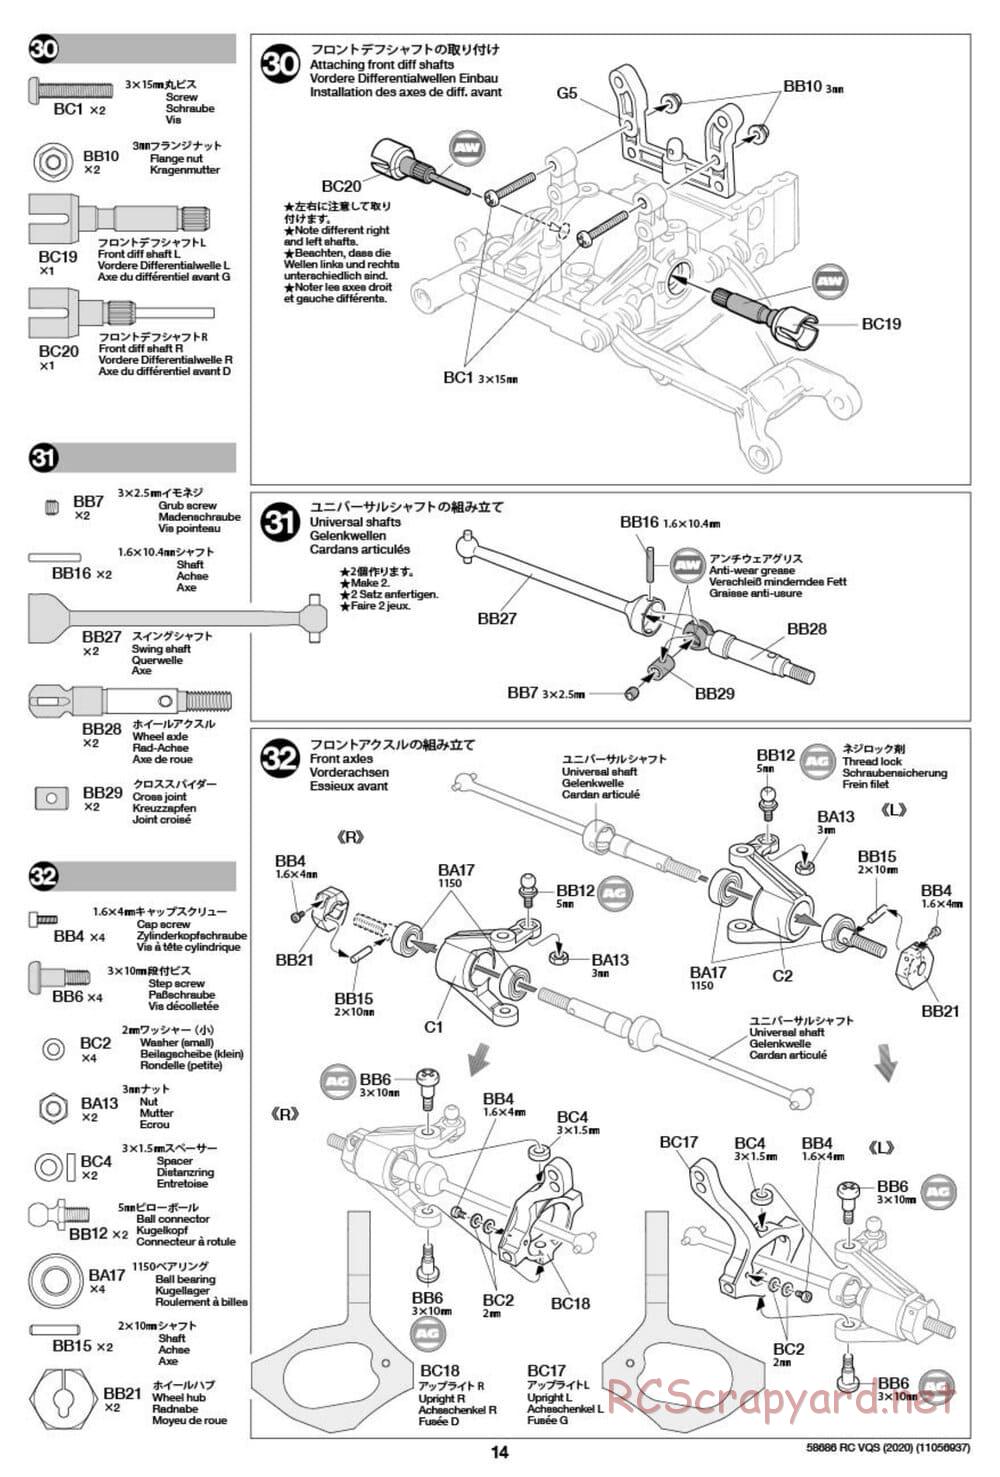 Tamiya - VQS (2020) - AV Chassis - Manual - Page 14